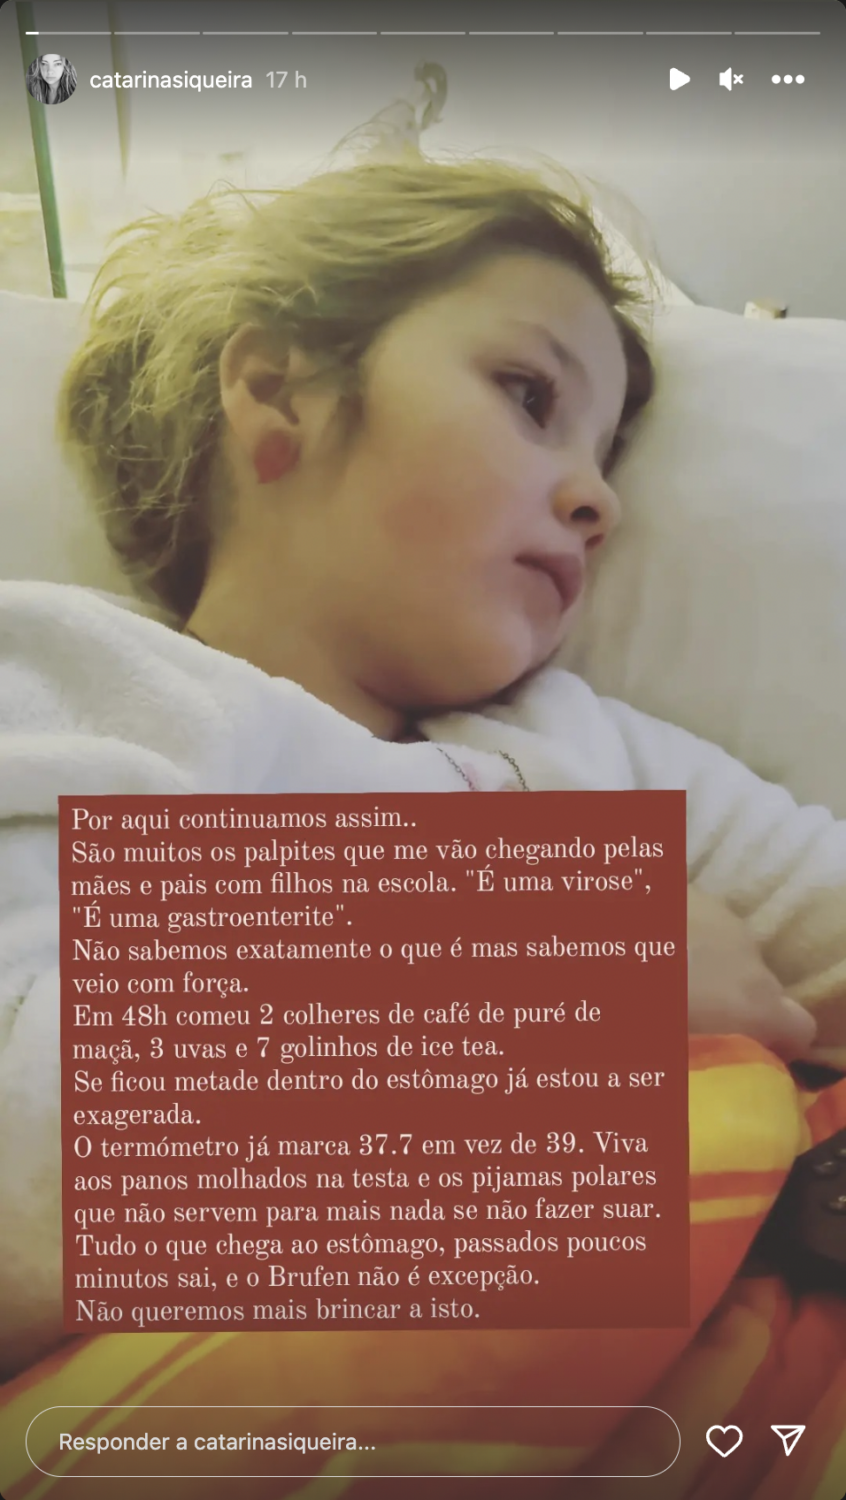 Catarina Siqueira de &#8216;coração apertado&#8217; com a filha doente: &#8220;Obrigada a todos pelas mensagens&#8230;&#8221;